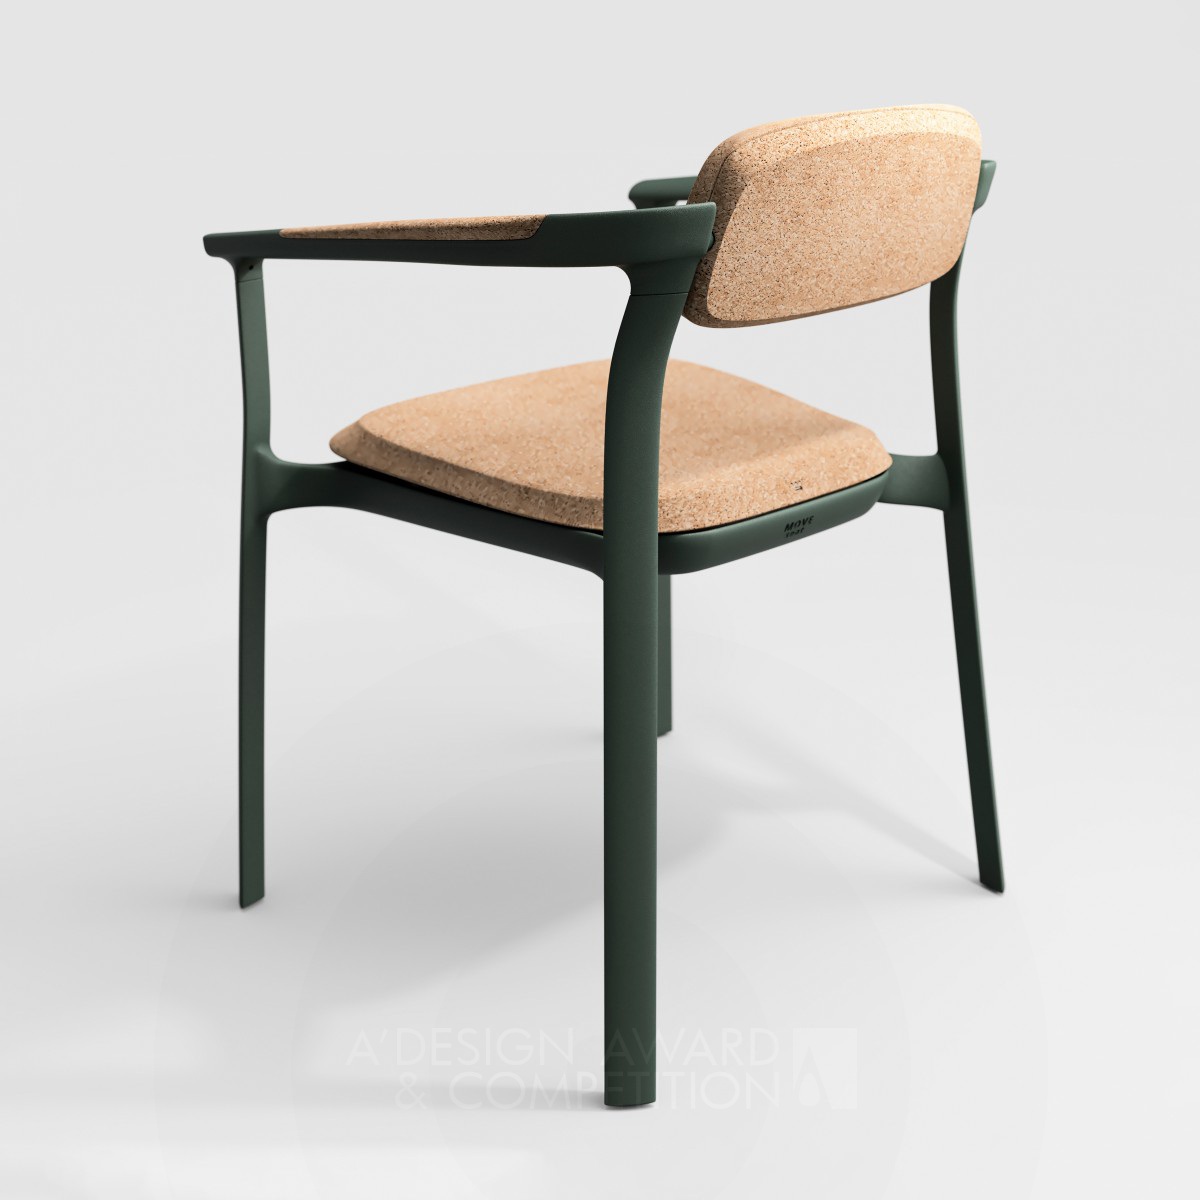 Move Chair by Ariel Śliwiński